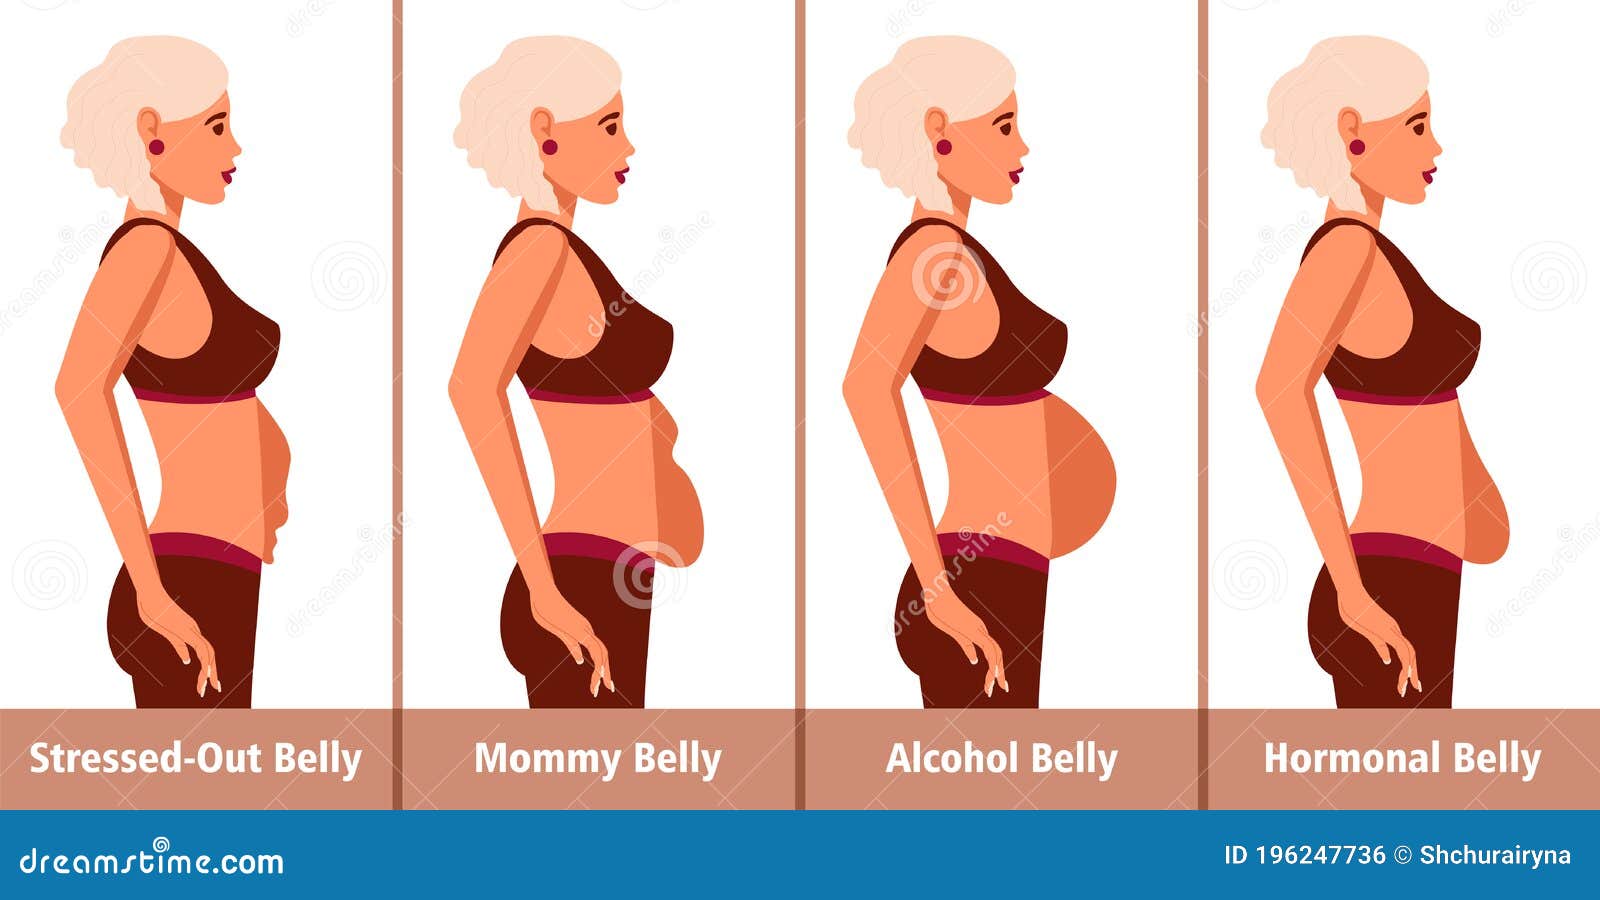 Λίπος στην κοιλιά: 5 σημάδια ότι «φταίνε» οι ορμόνες σας (pics)